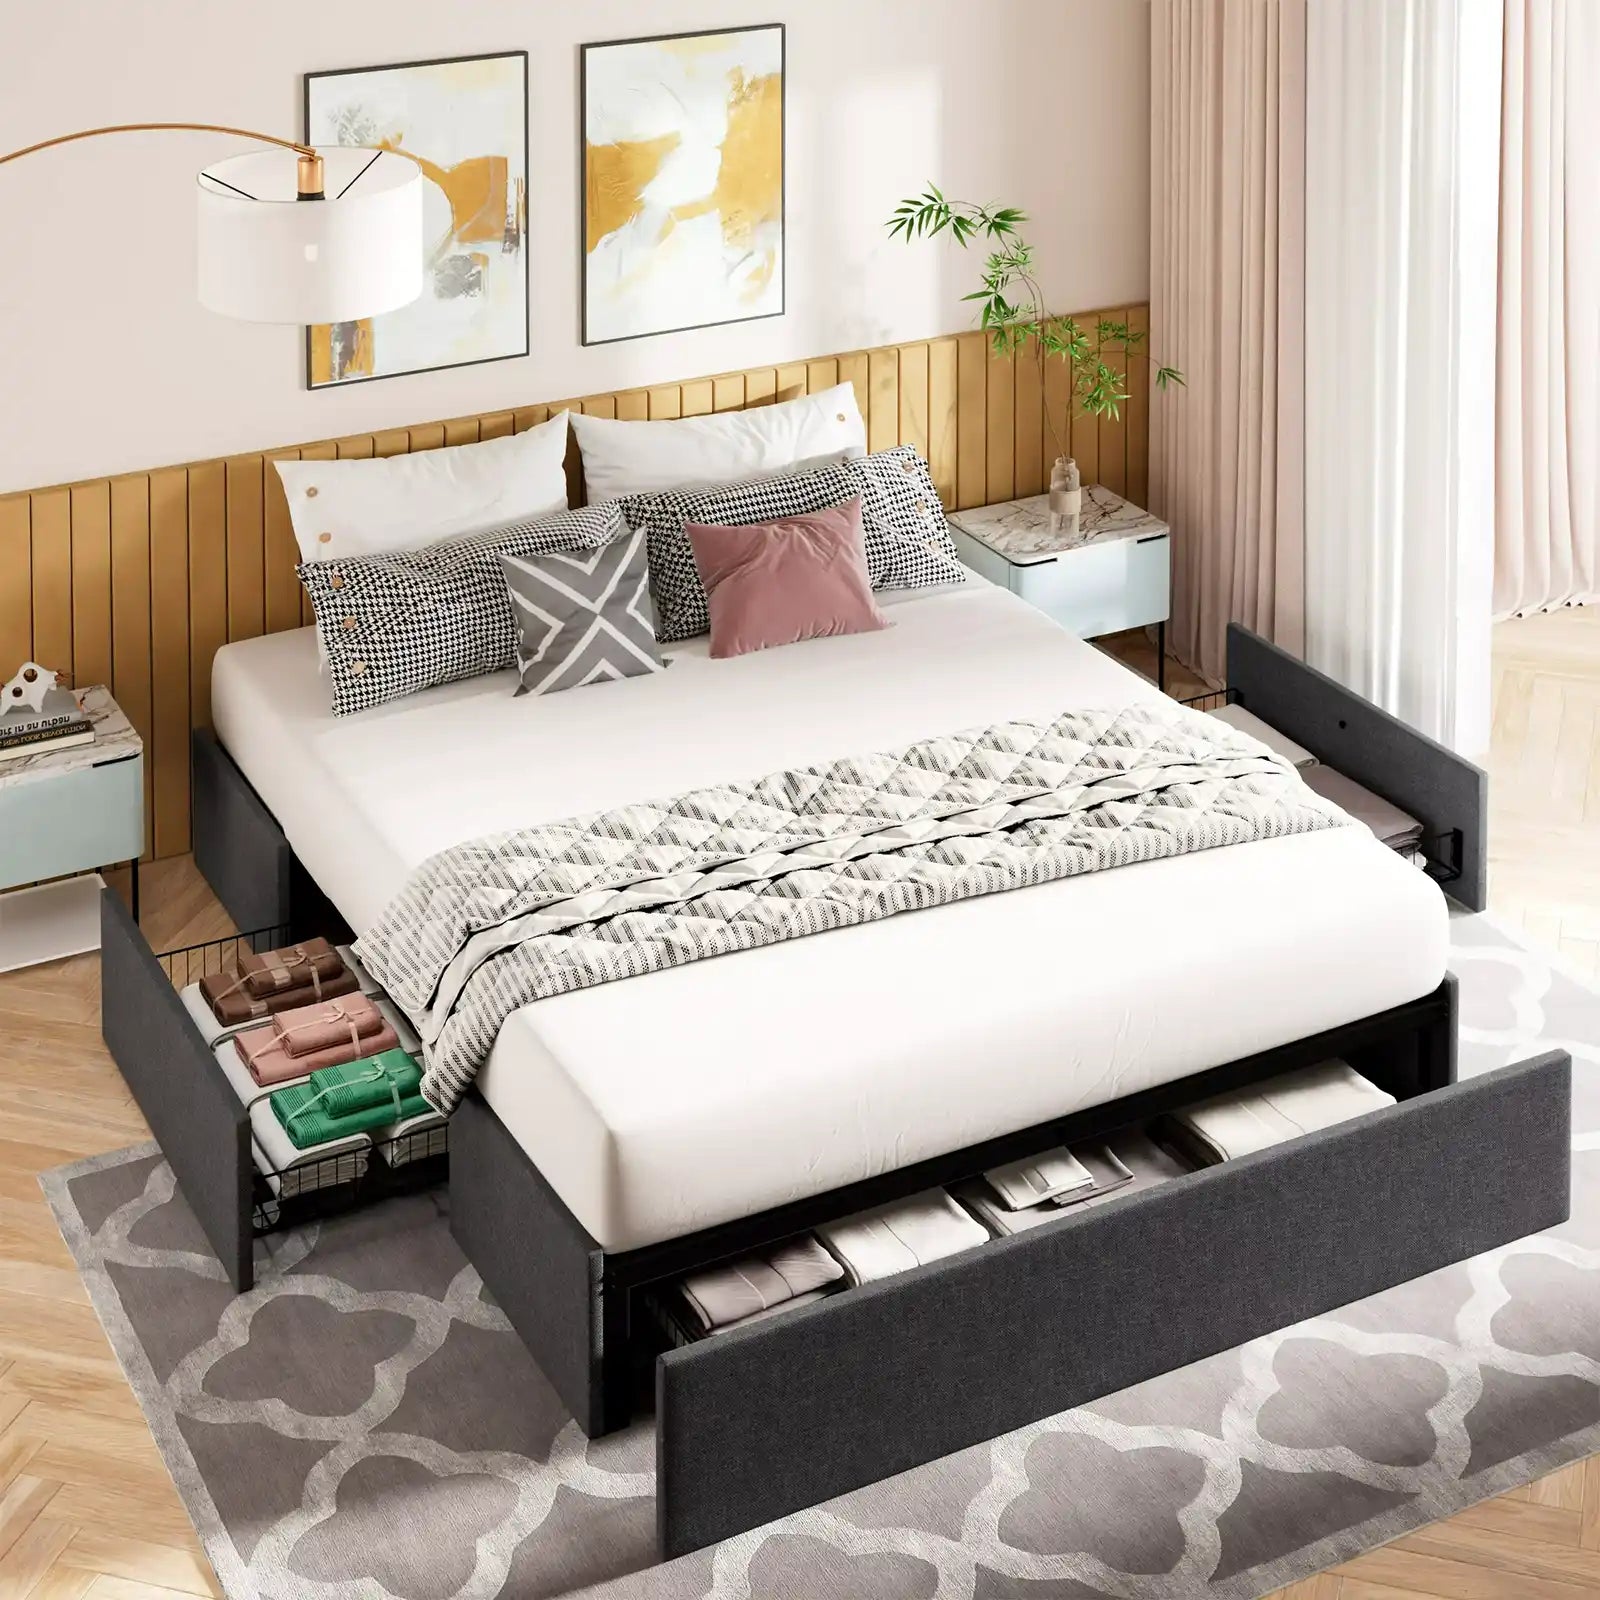 Estructura de cama con plataforma tapizada, 3 cajones de almacenamiento y listones de madera, gris oscuro 